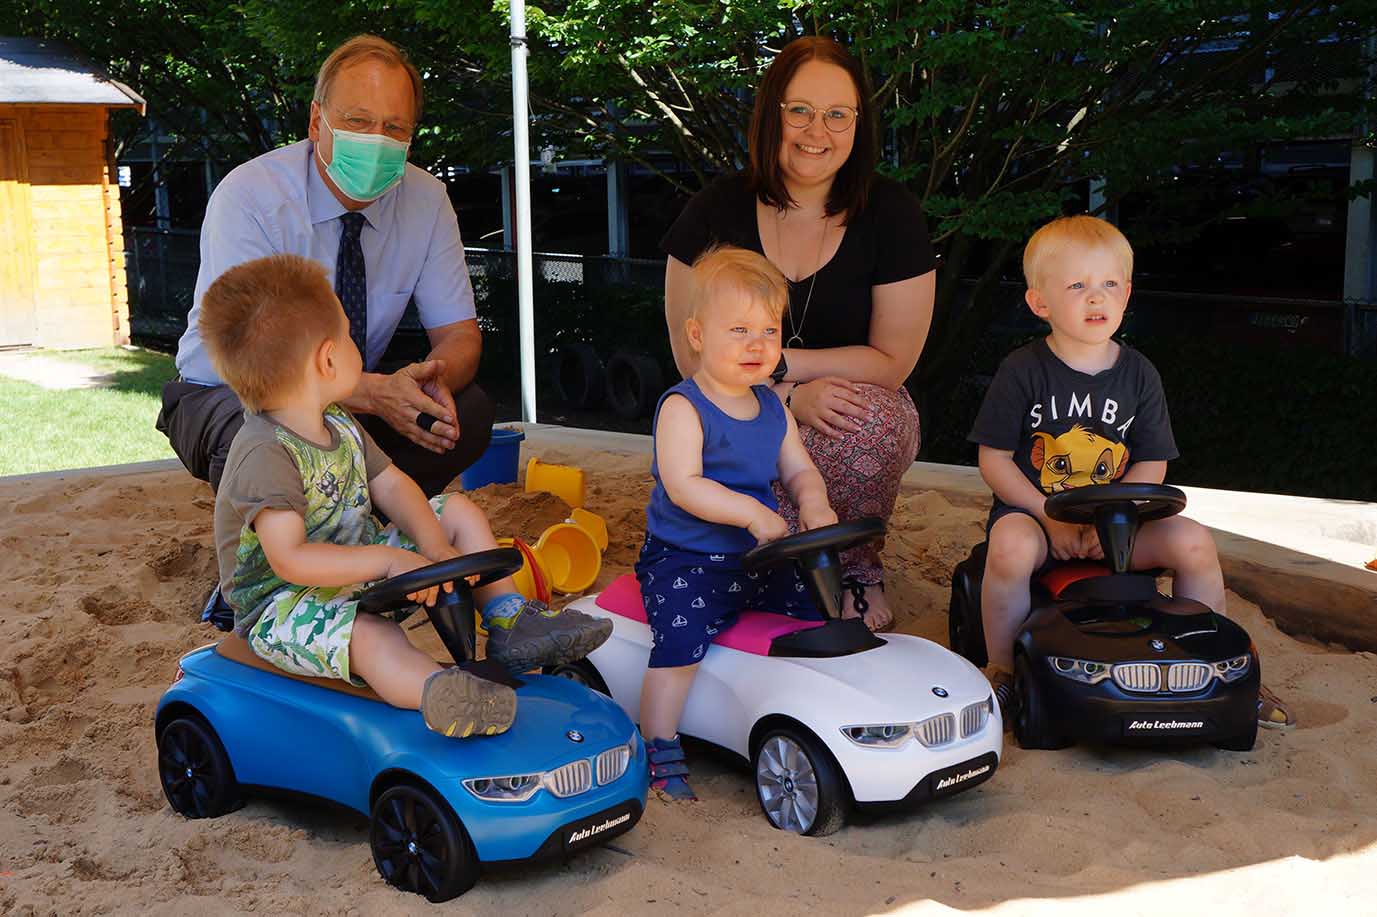 Übergabe BMW Baby Racer an Kinder des Städtischen Kinderhauses in Passau durch Bernd Karoli Geschäftsführer Auto-Leebmann